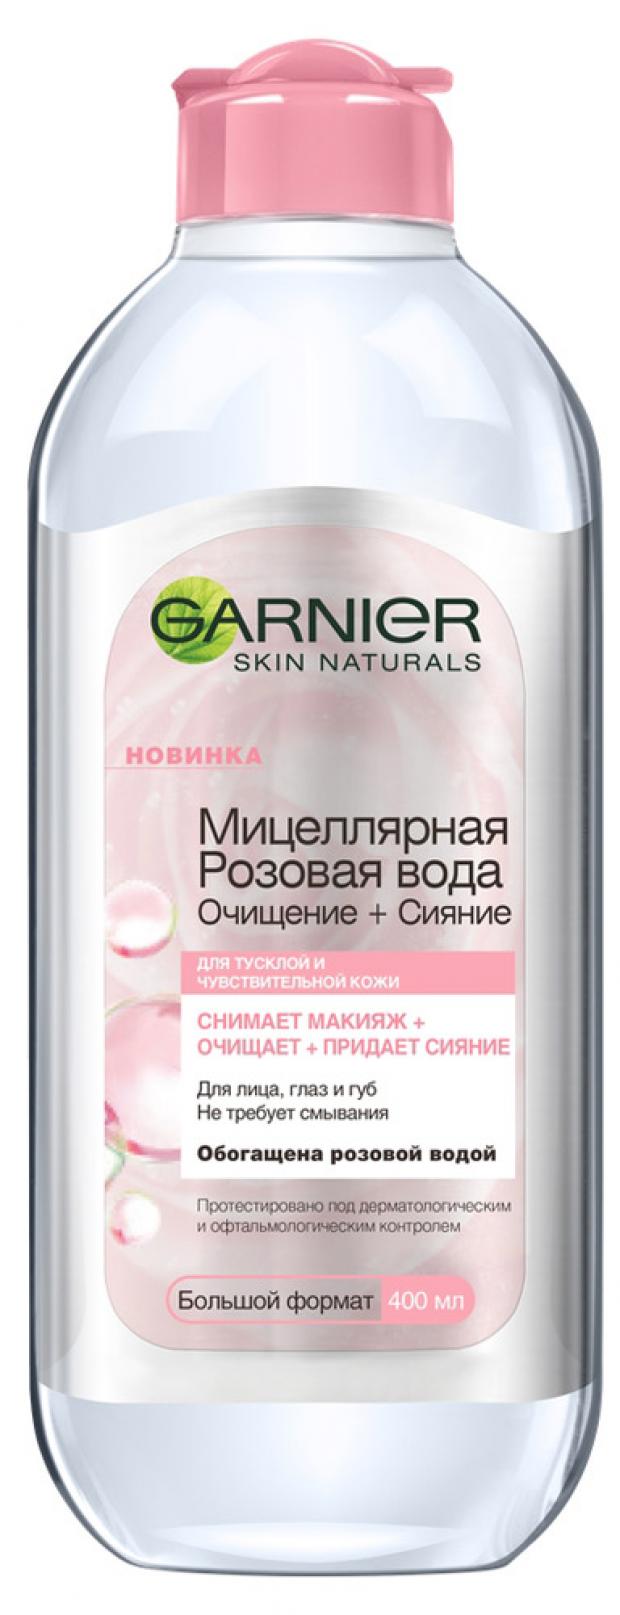 мицеллярная розовая вода для снятия макияжа garnier очищение сияние для тусклой и чувствительной кожи